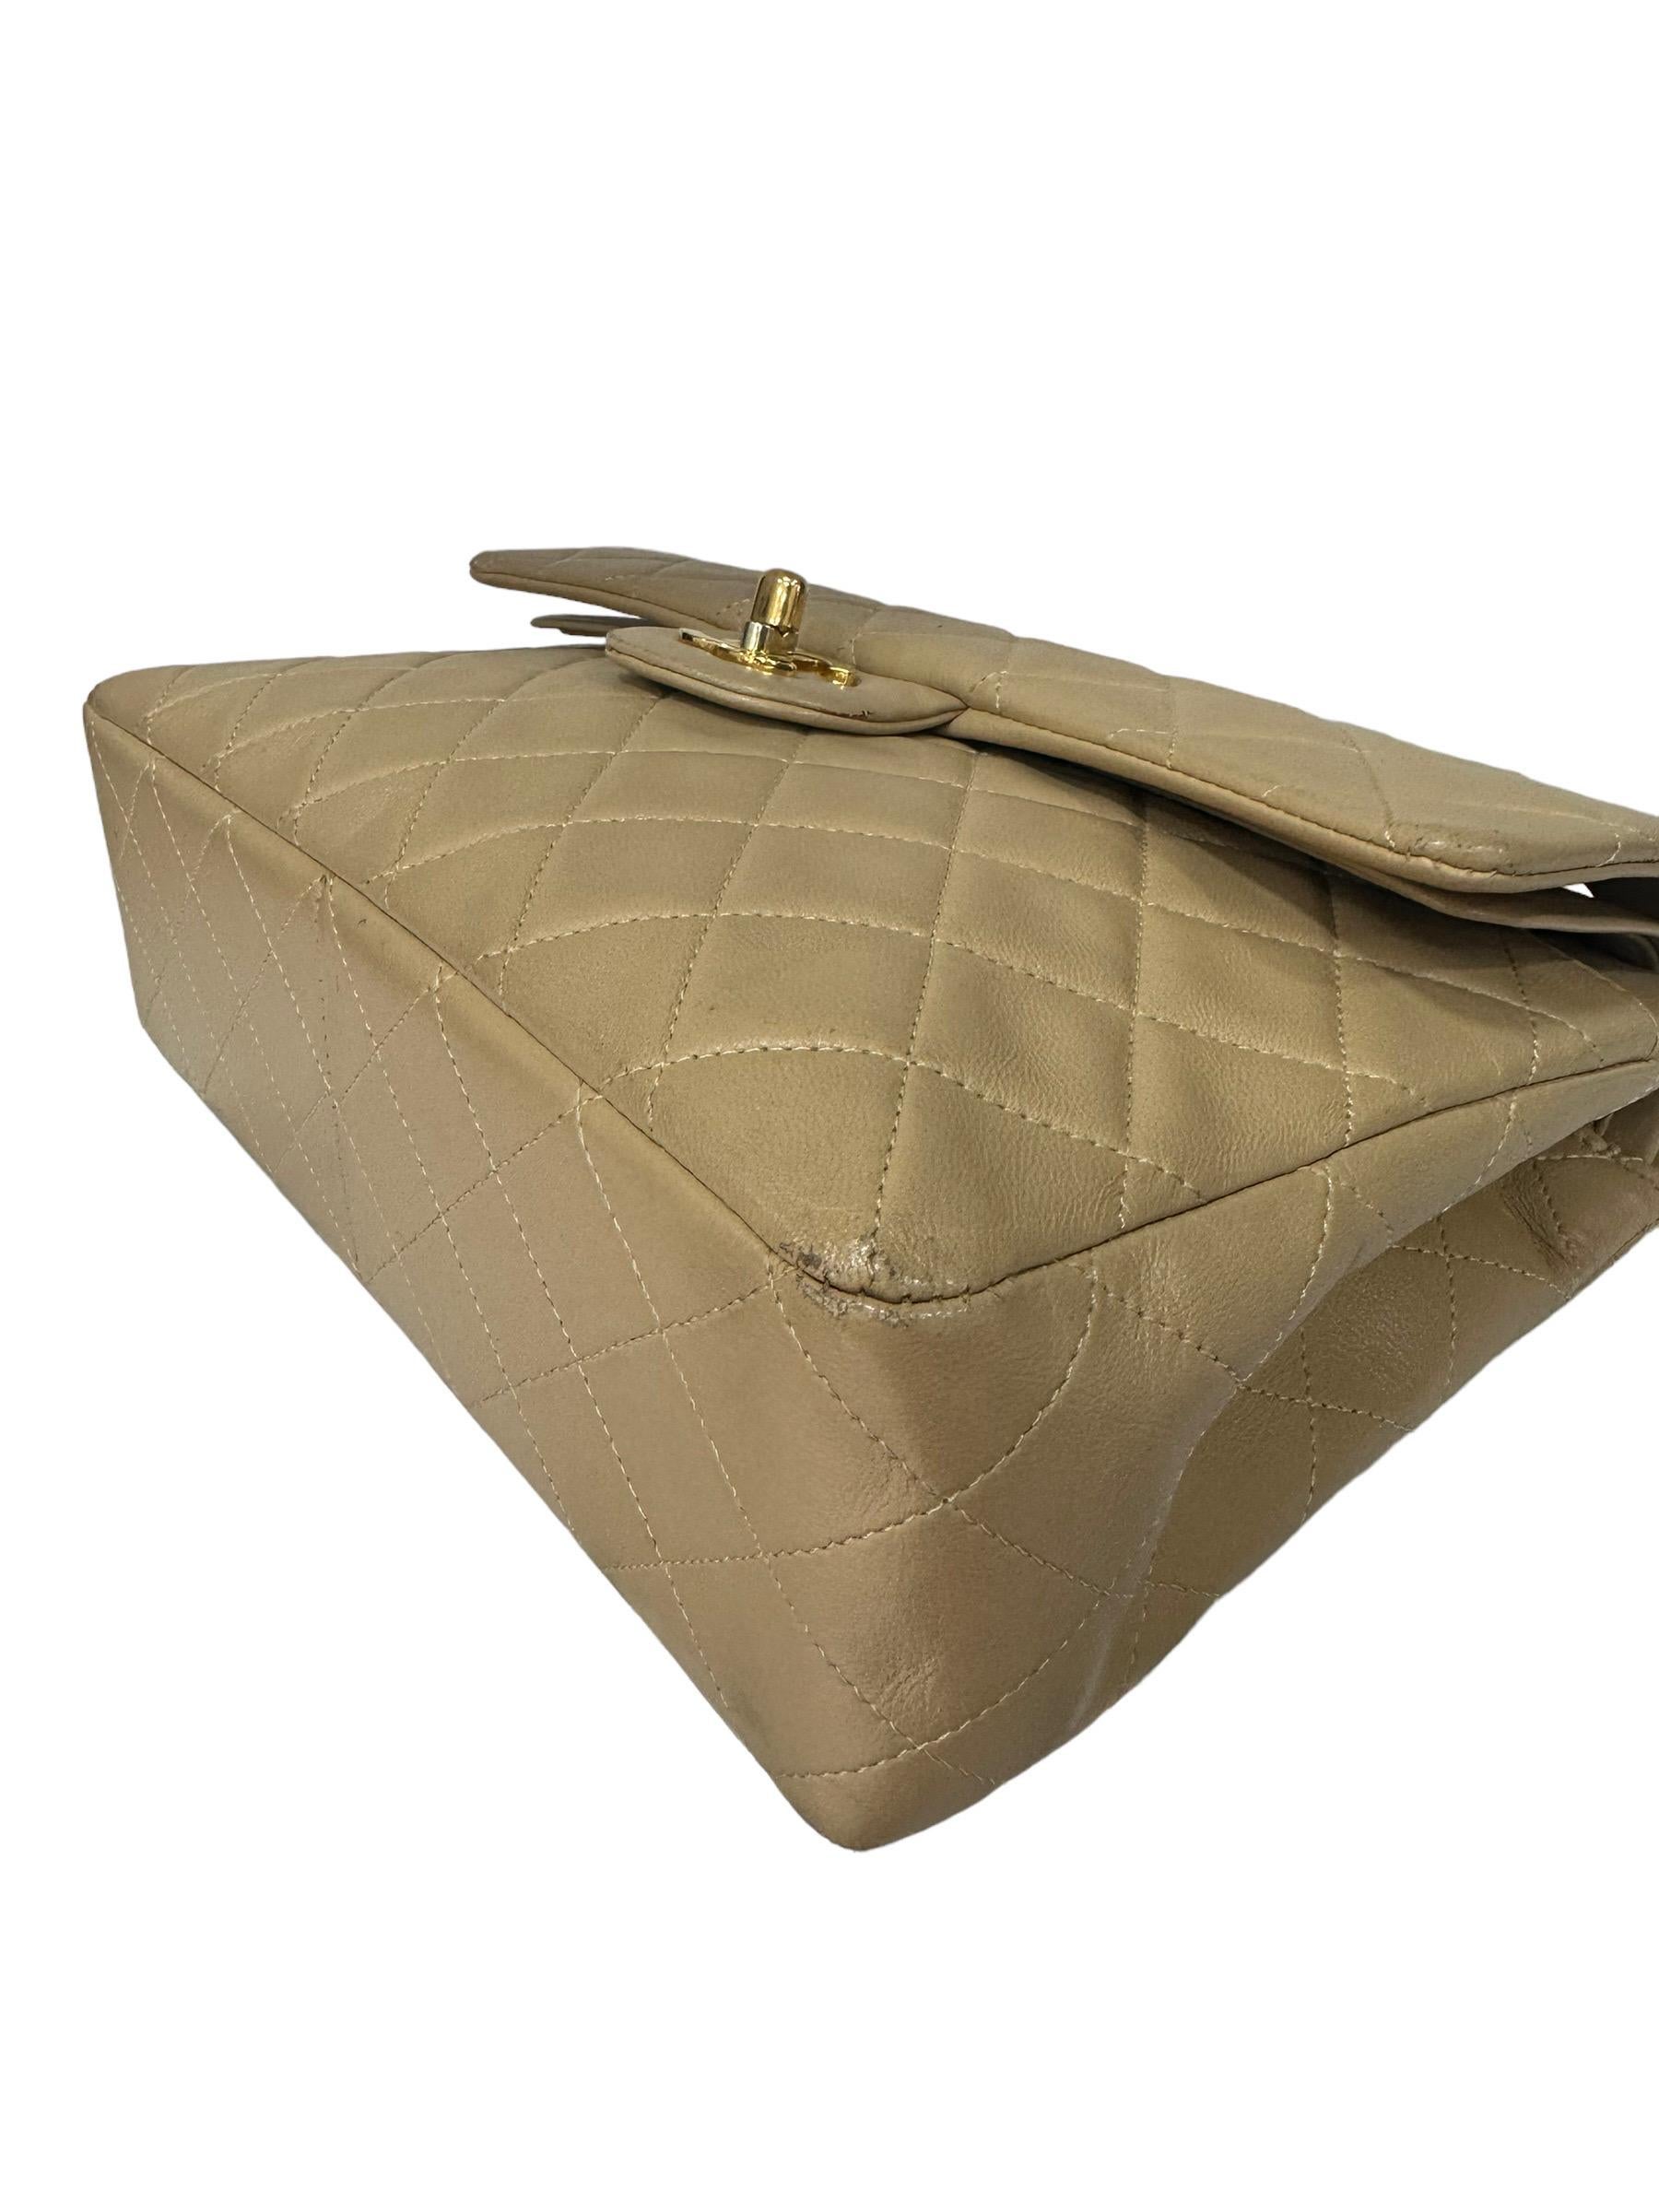 ‘90 Chanel Flap Vintage Beige Leather Shoulder Bag For Sale 8